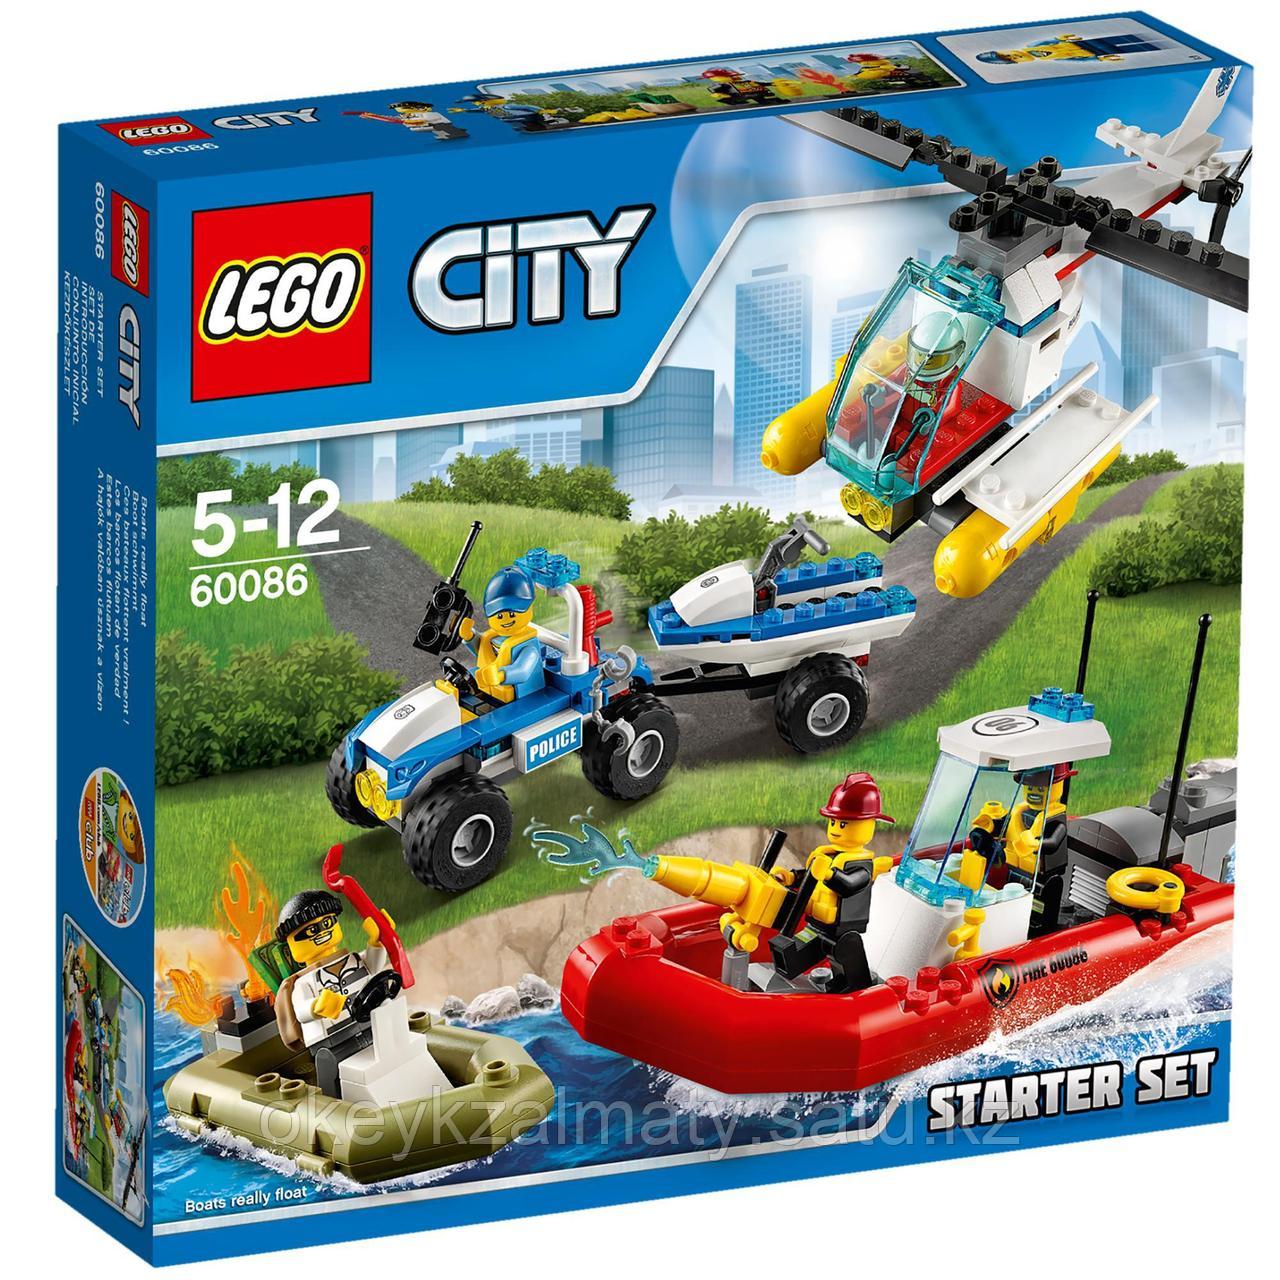 LEGO City: Набор для начинающих 60086